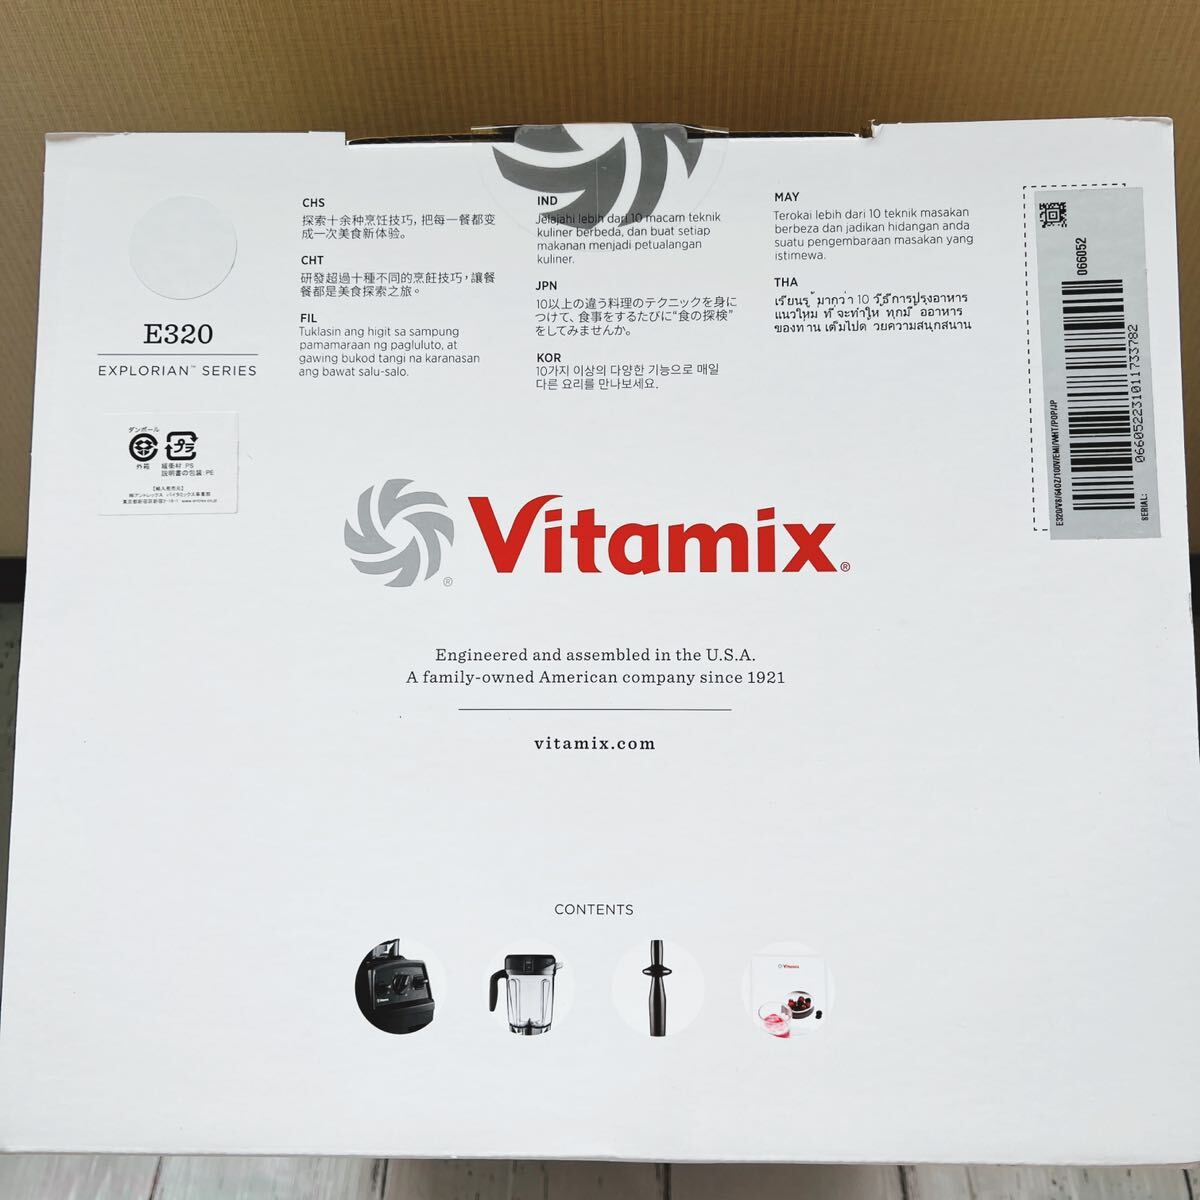 Vitamixbaita Mix E320 белый новый товар не использовался нераспечатанный 